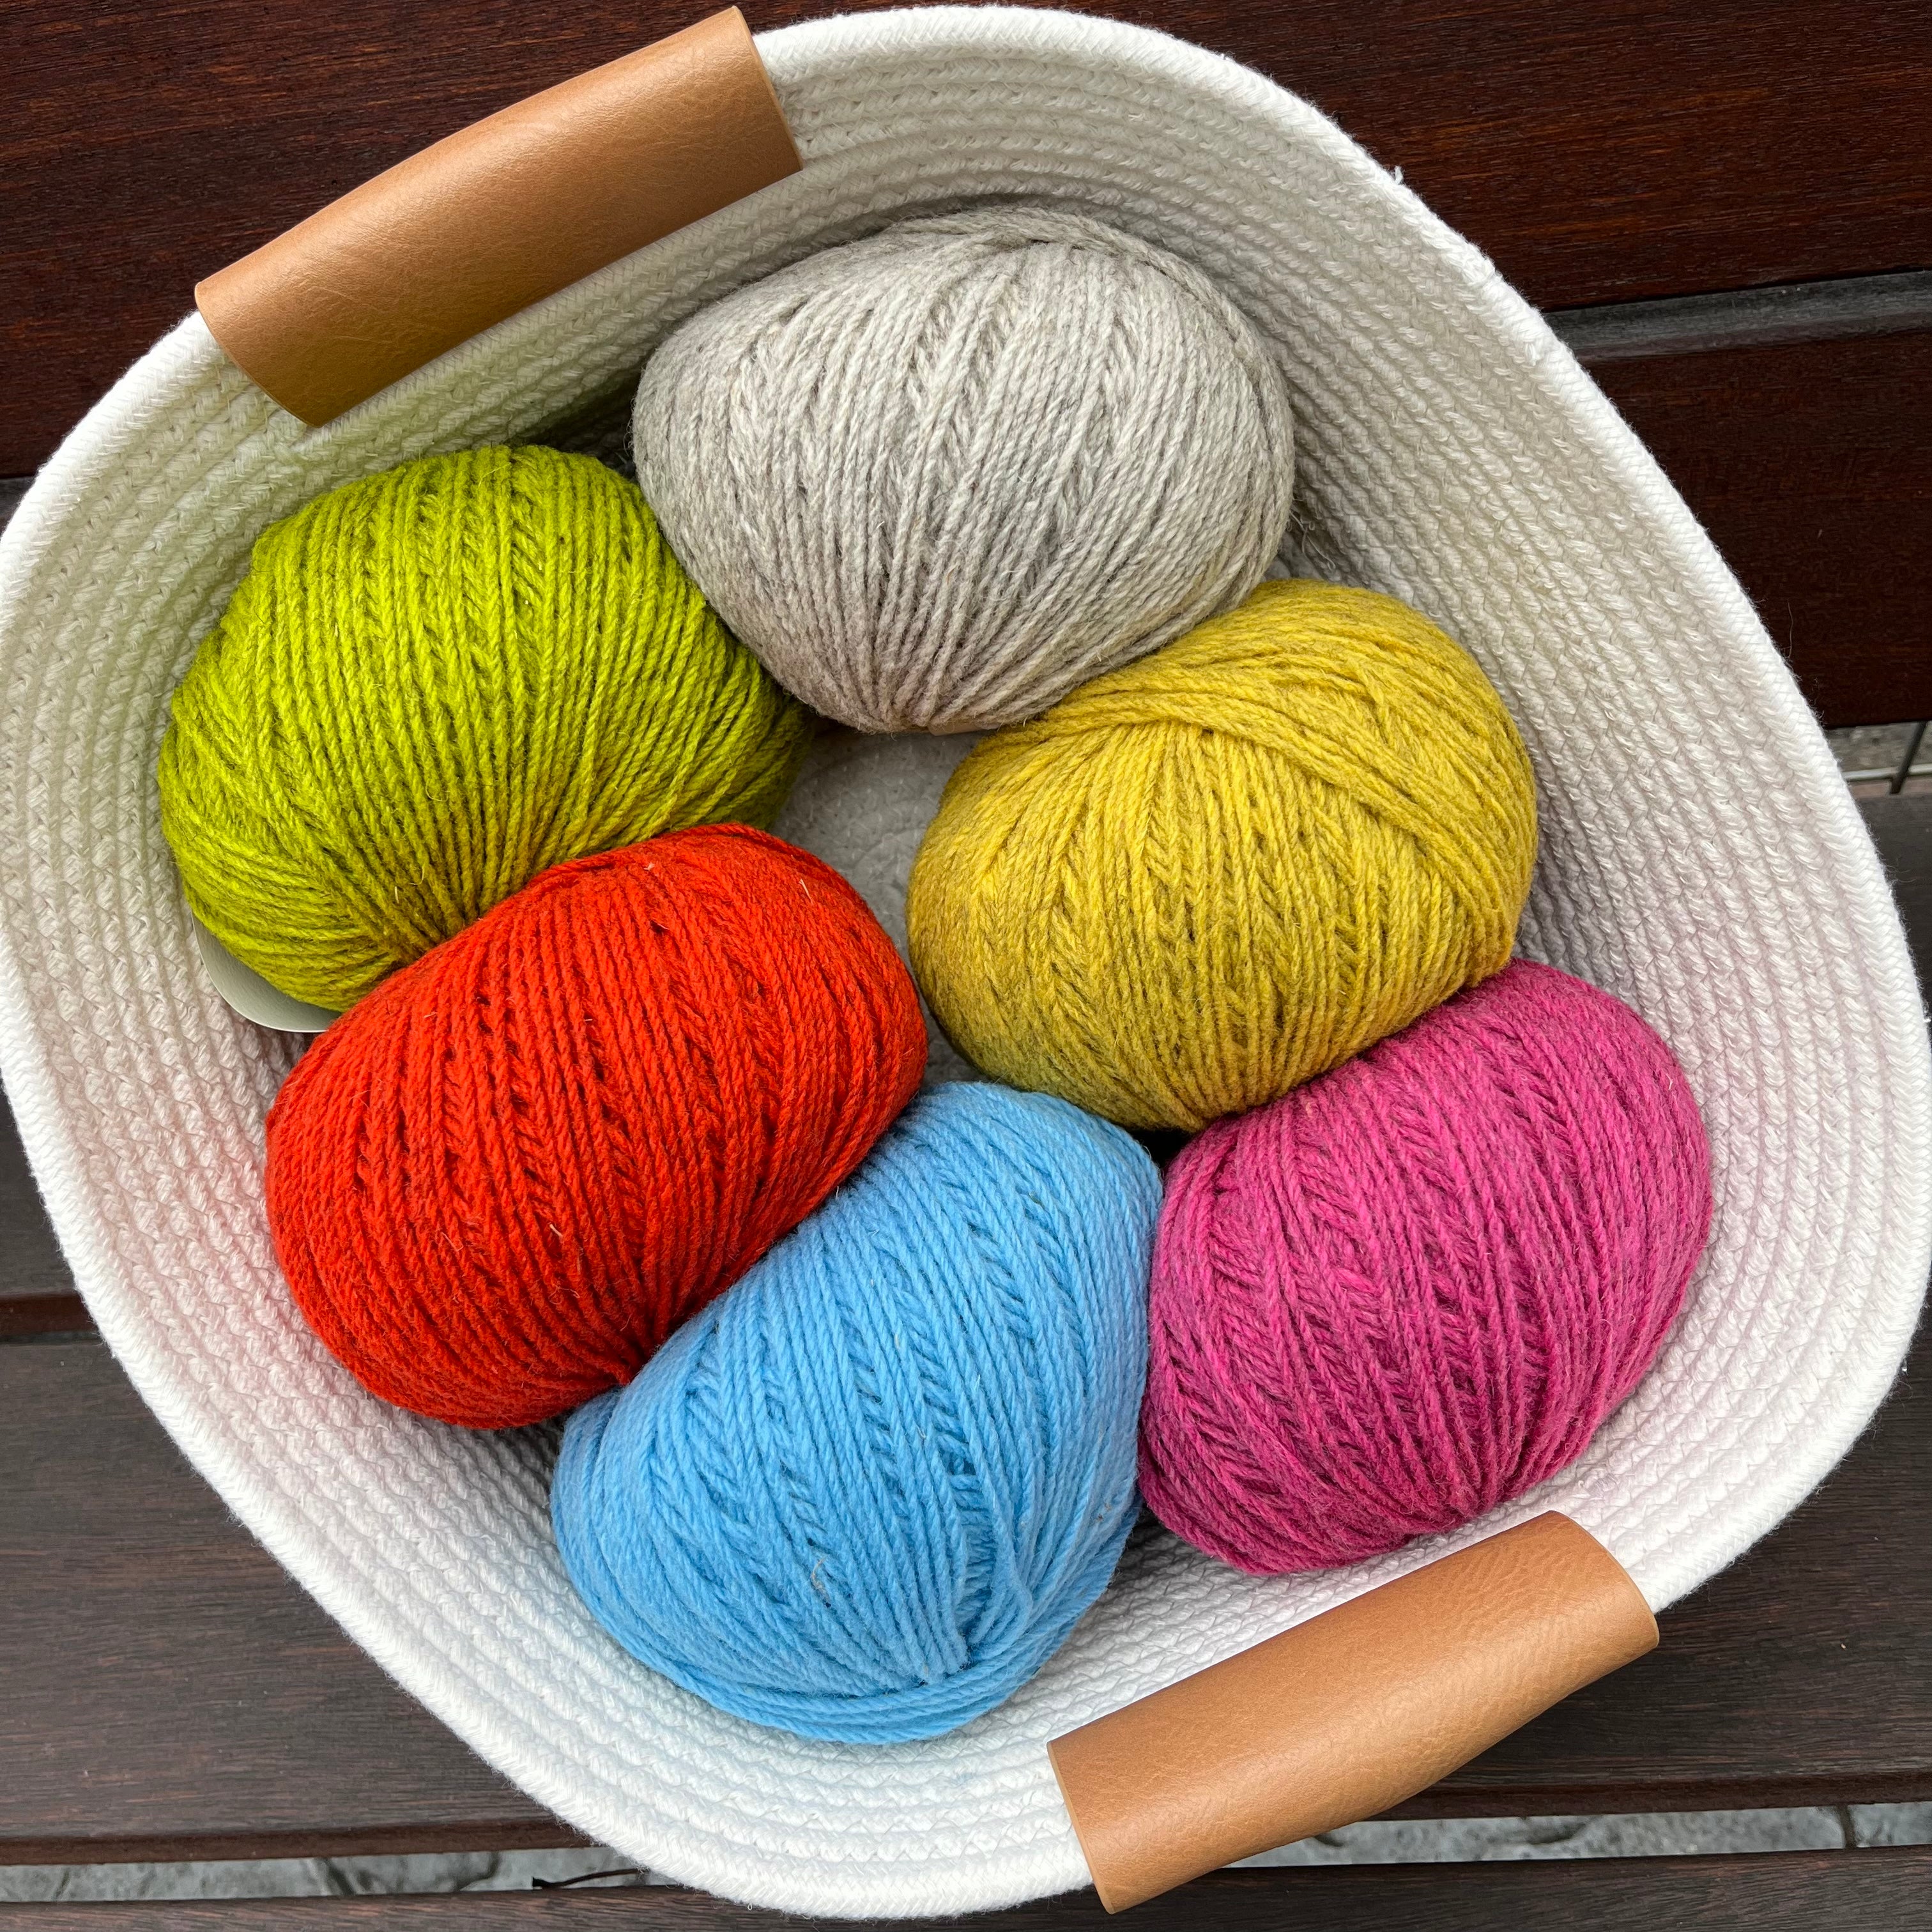 Mota yarn from WoolDreamers